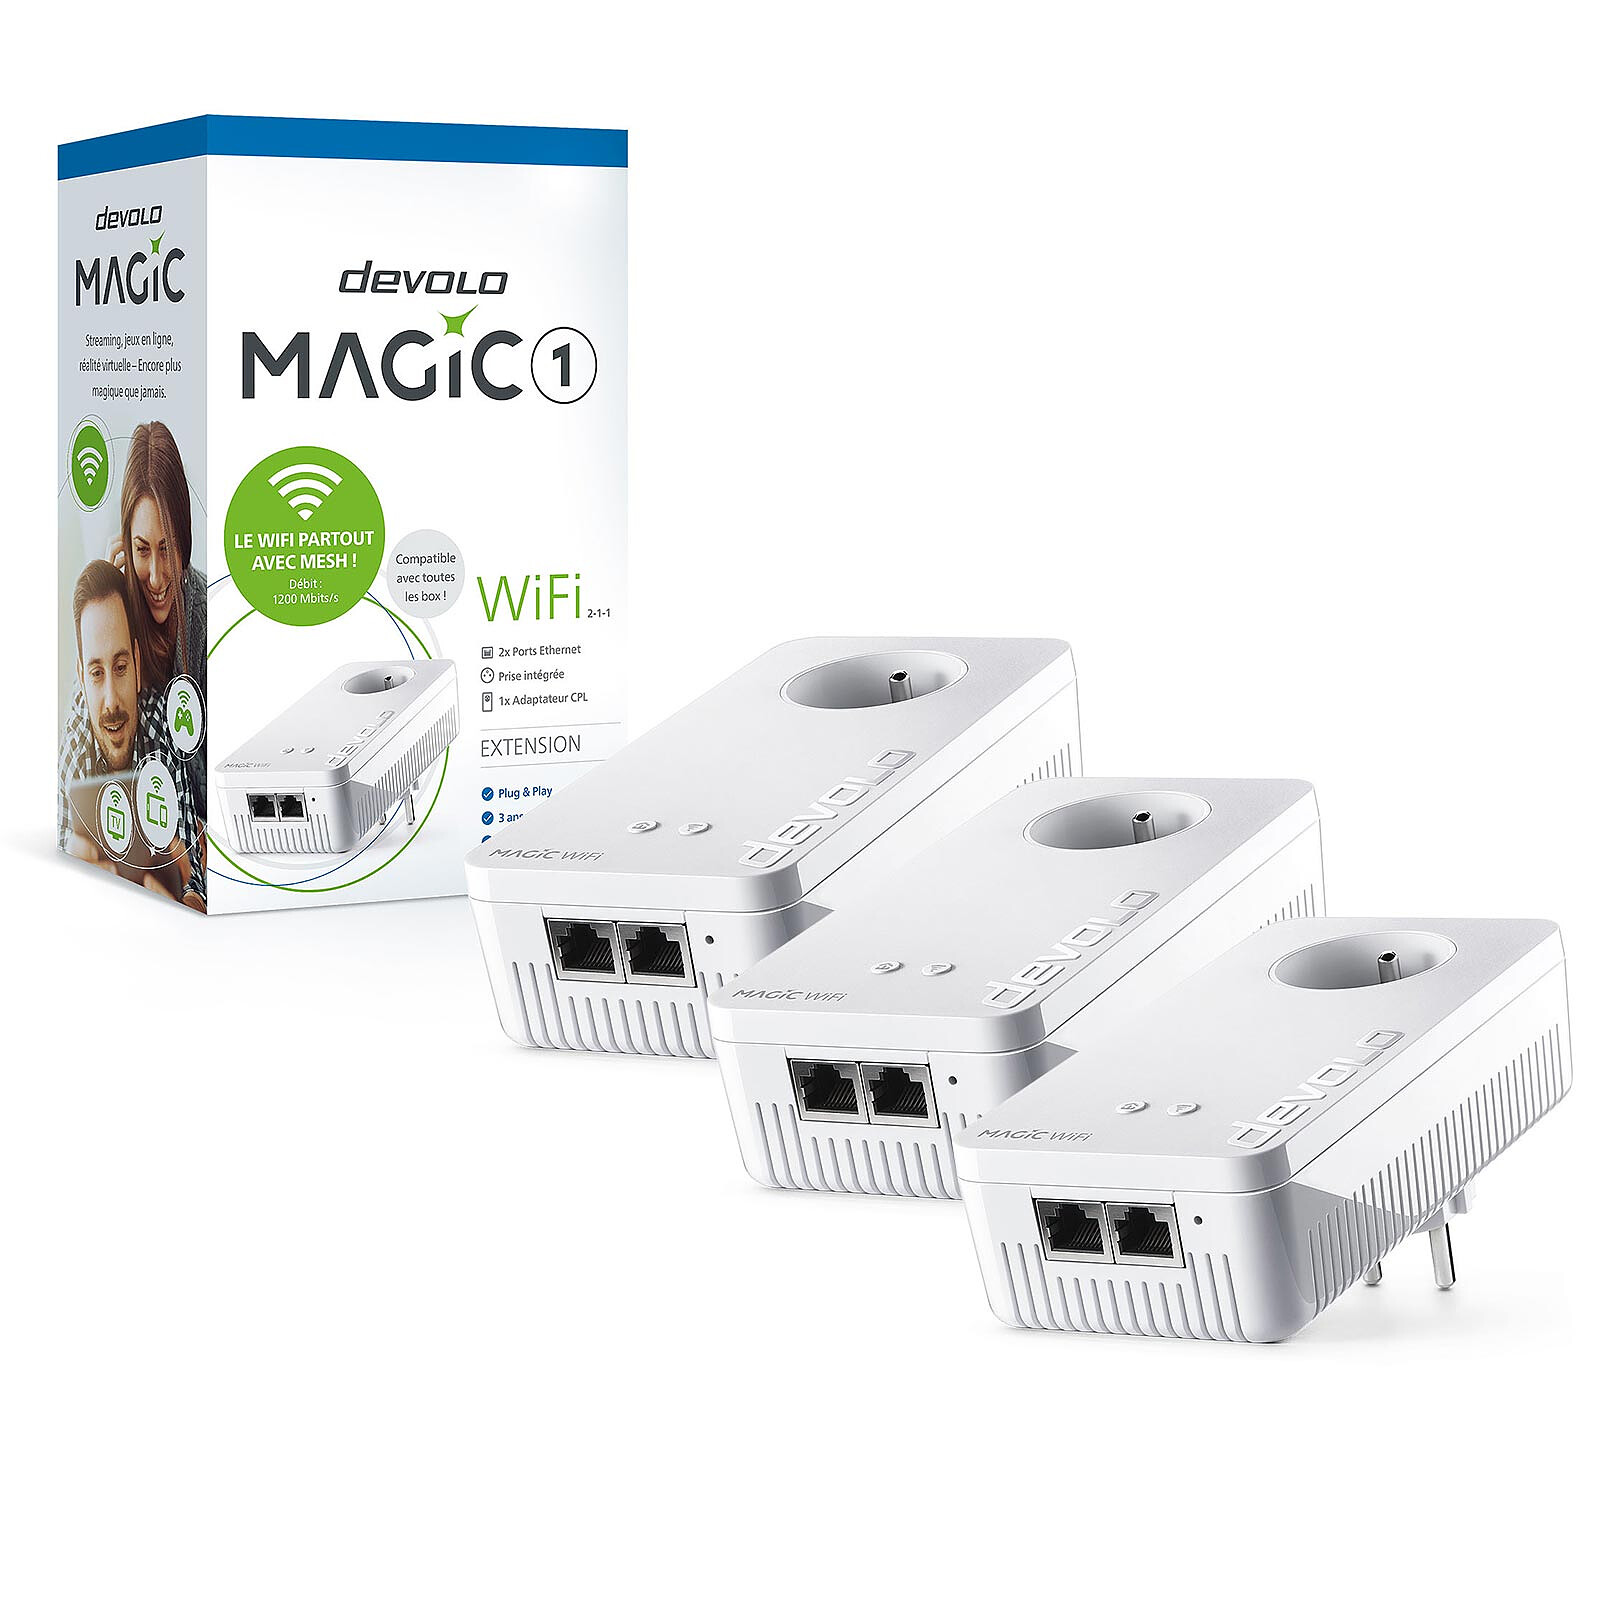 devolo Magic 1 Wi-Fi (pack of 3)